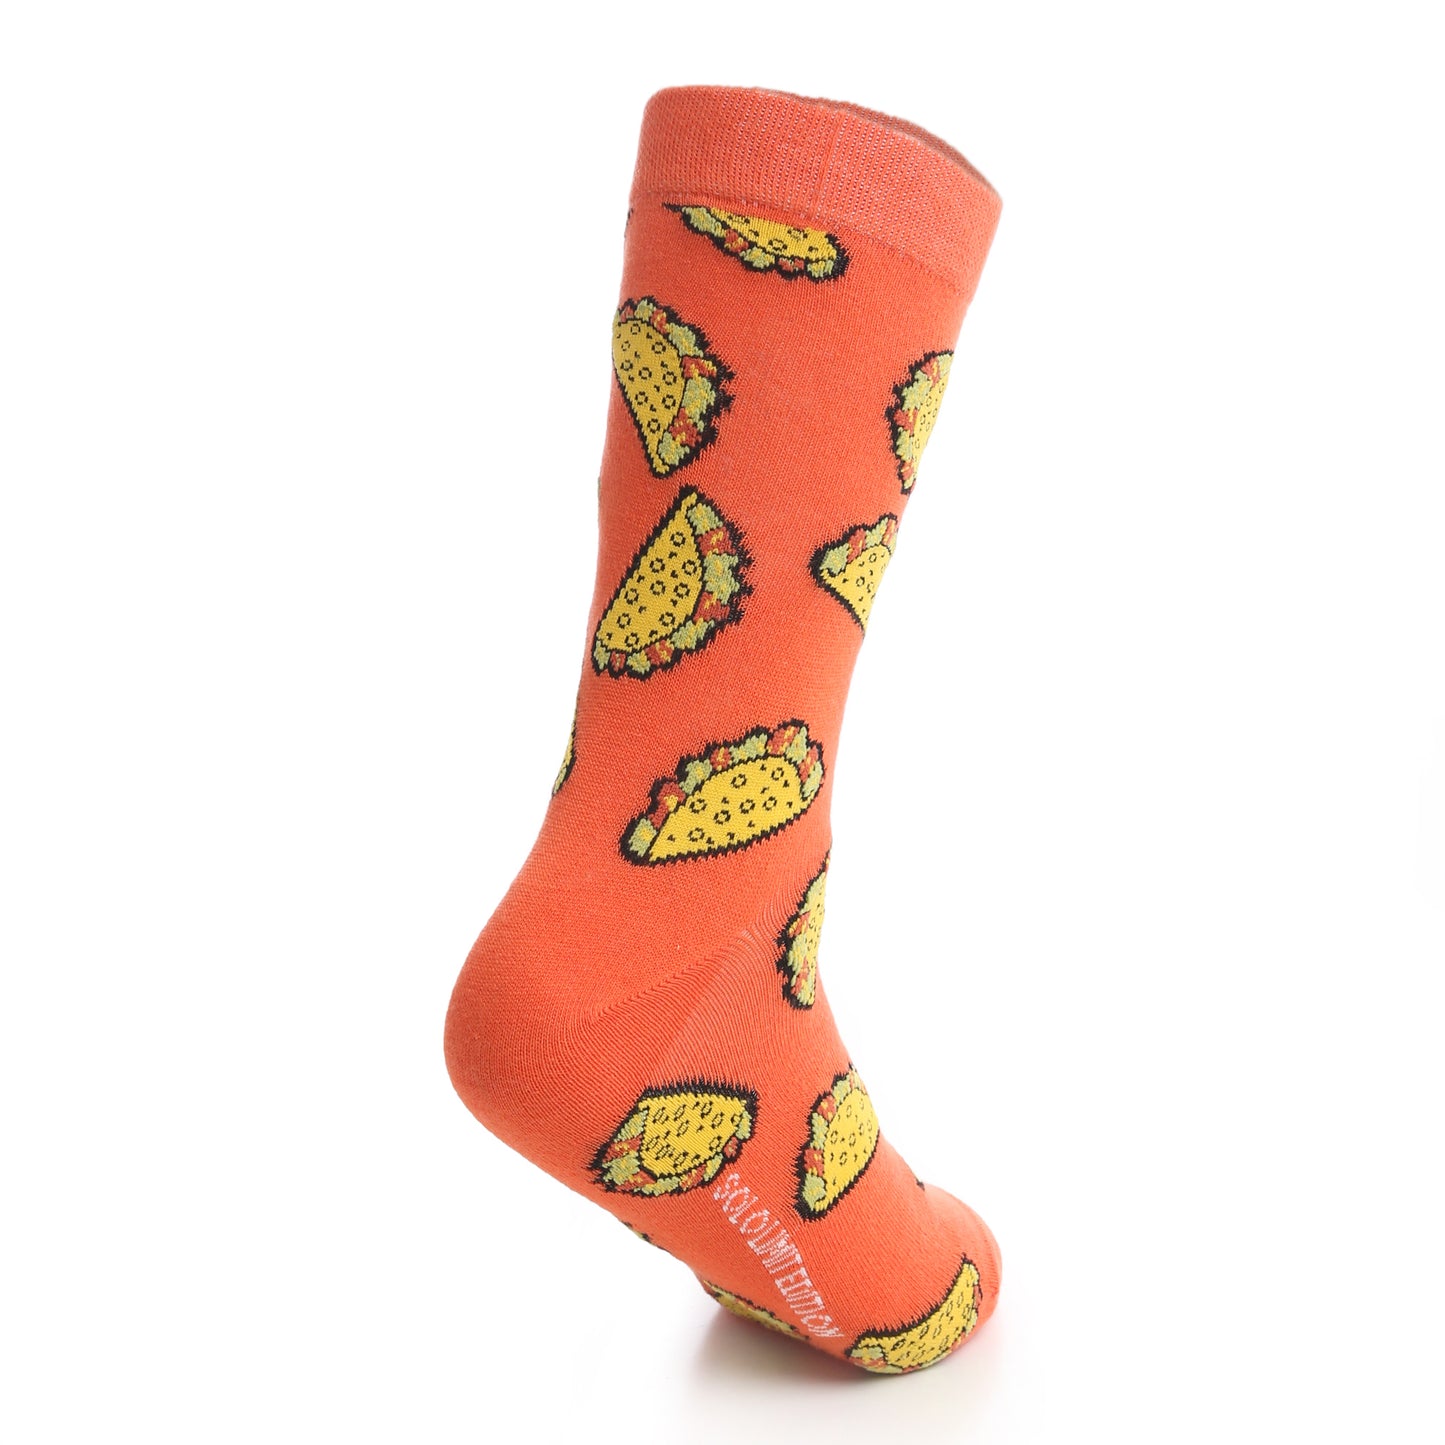 Tacos socks